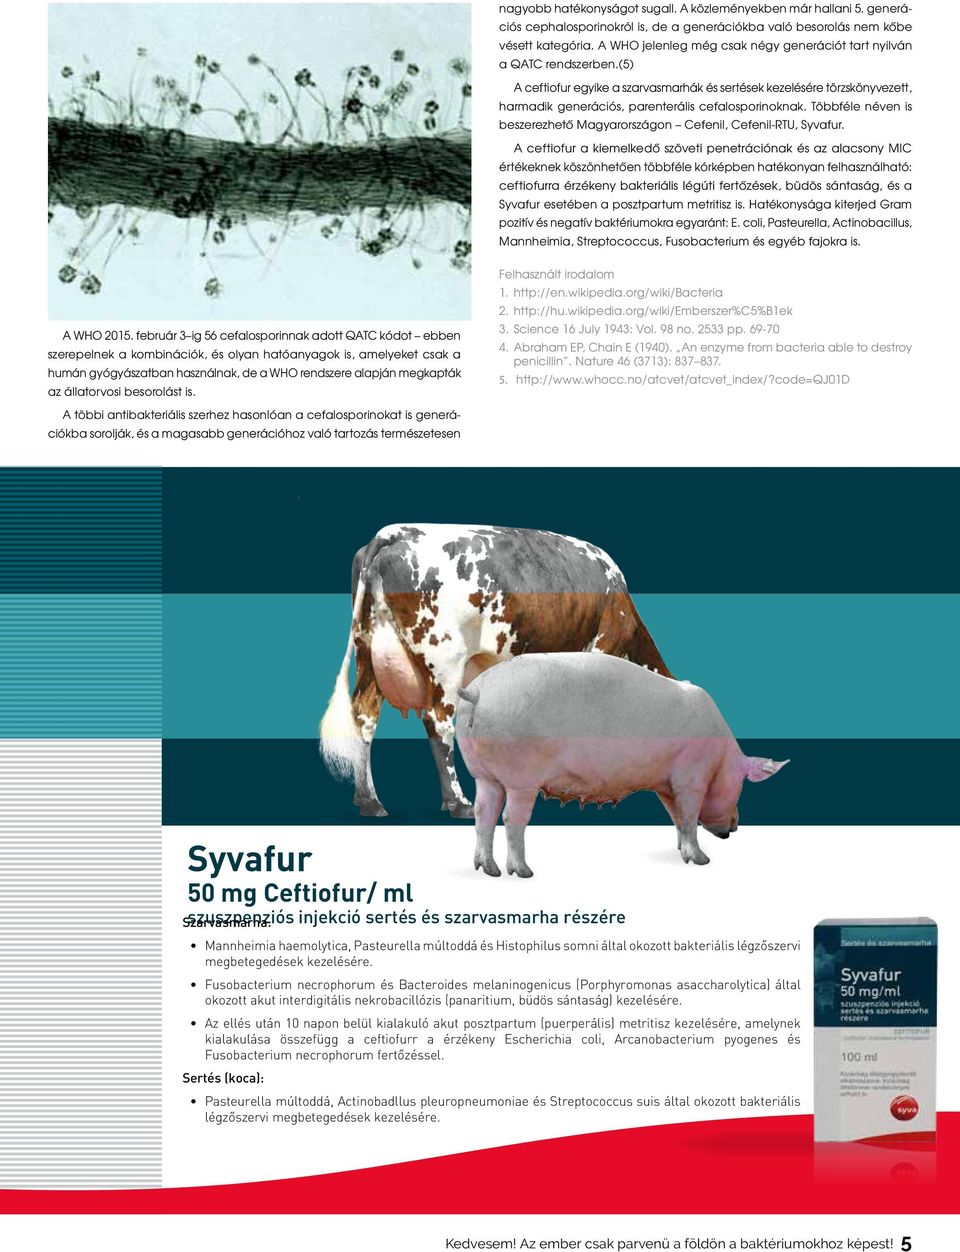 (5) A ceftiofur egyike a szarvasmarhák és sertések kezelésére törzskönyvezett, harmadik generációs, parenterális cefalosporinoknak.